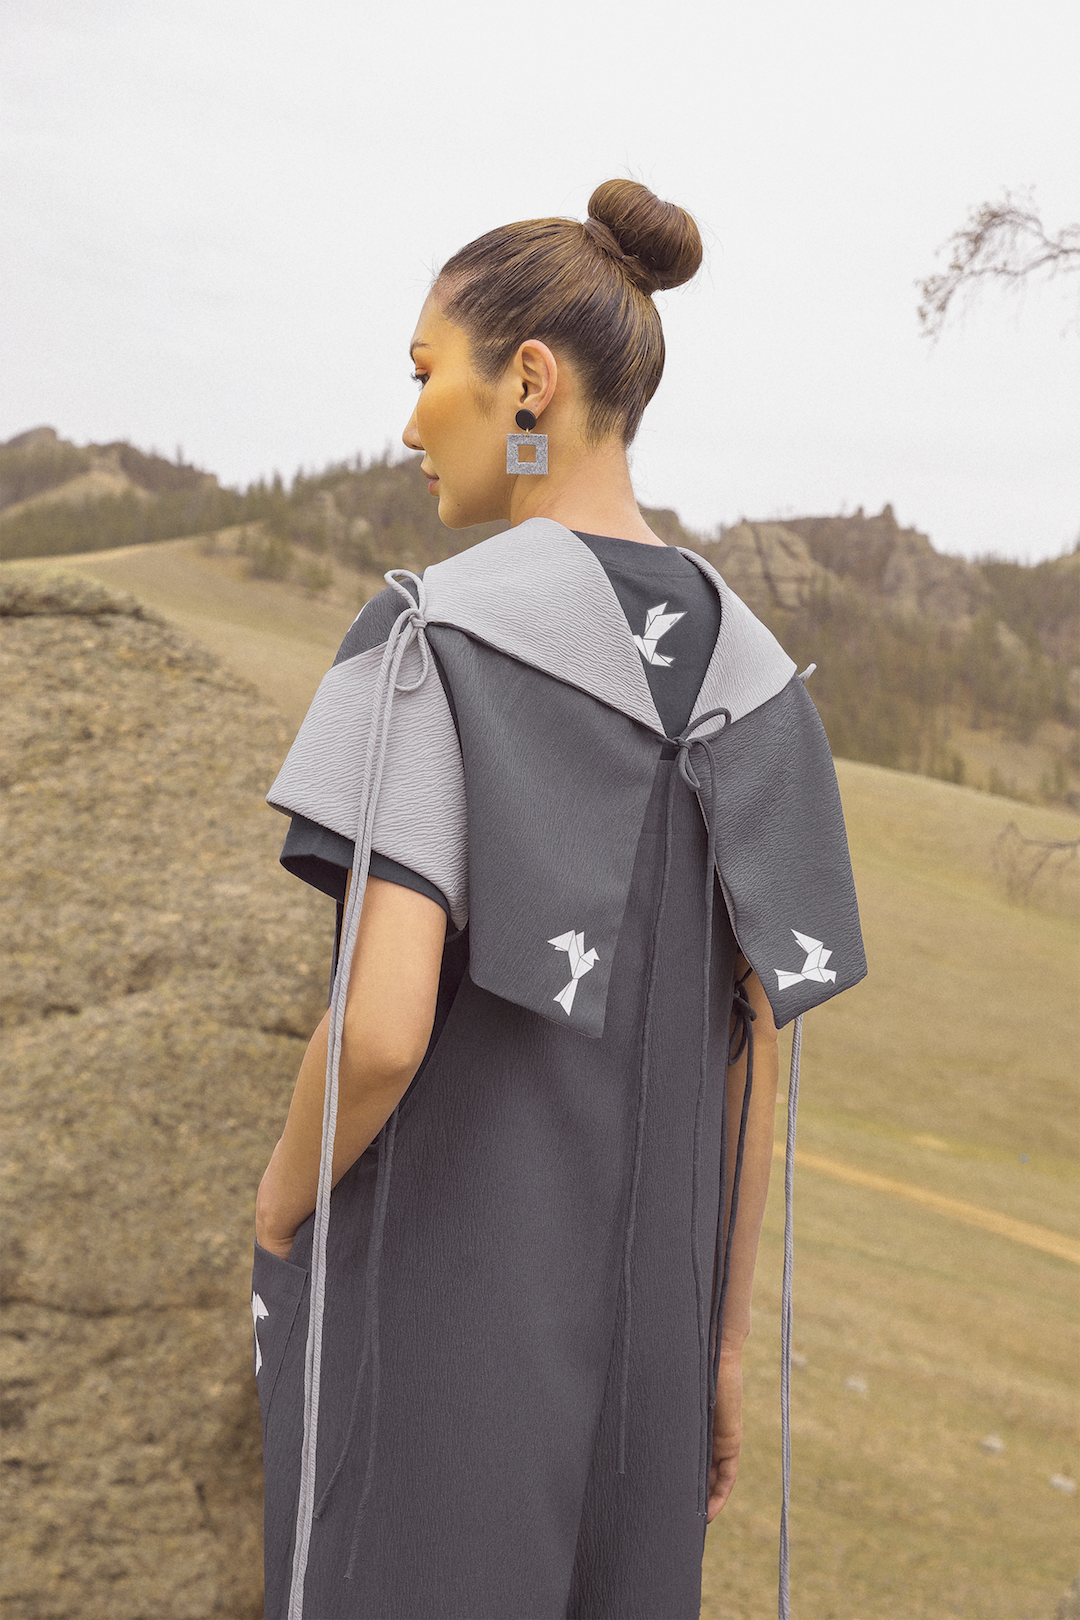 MPDU Digital Fashion week: AMULET "Paper Bird" цуглуулга (фото 11)